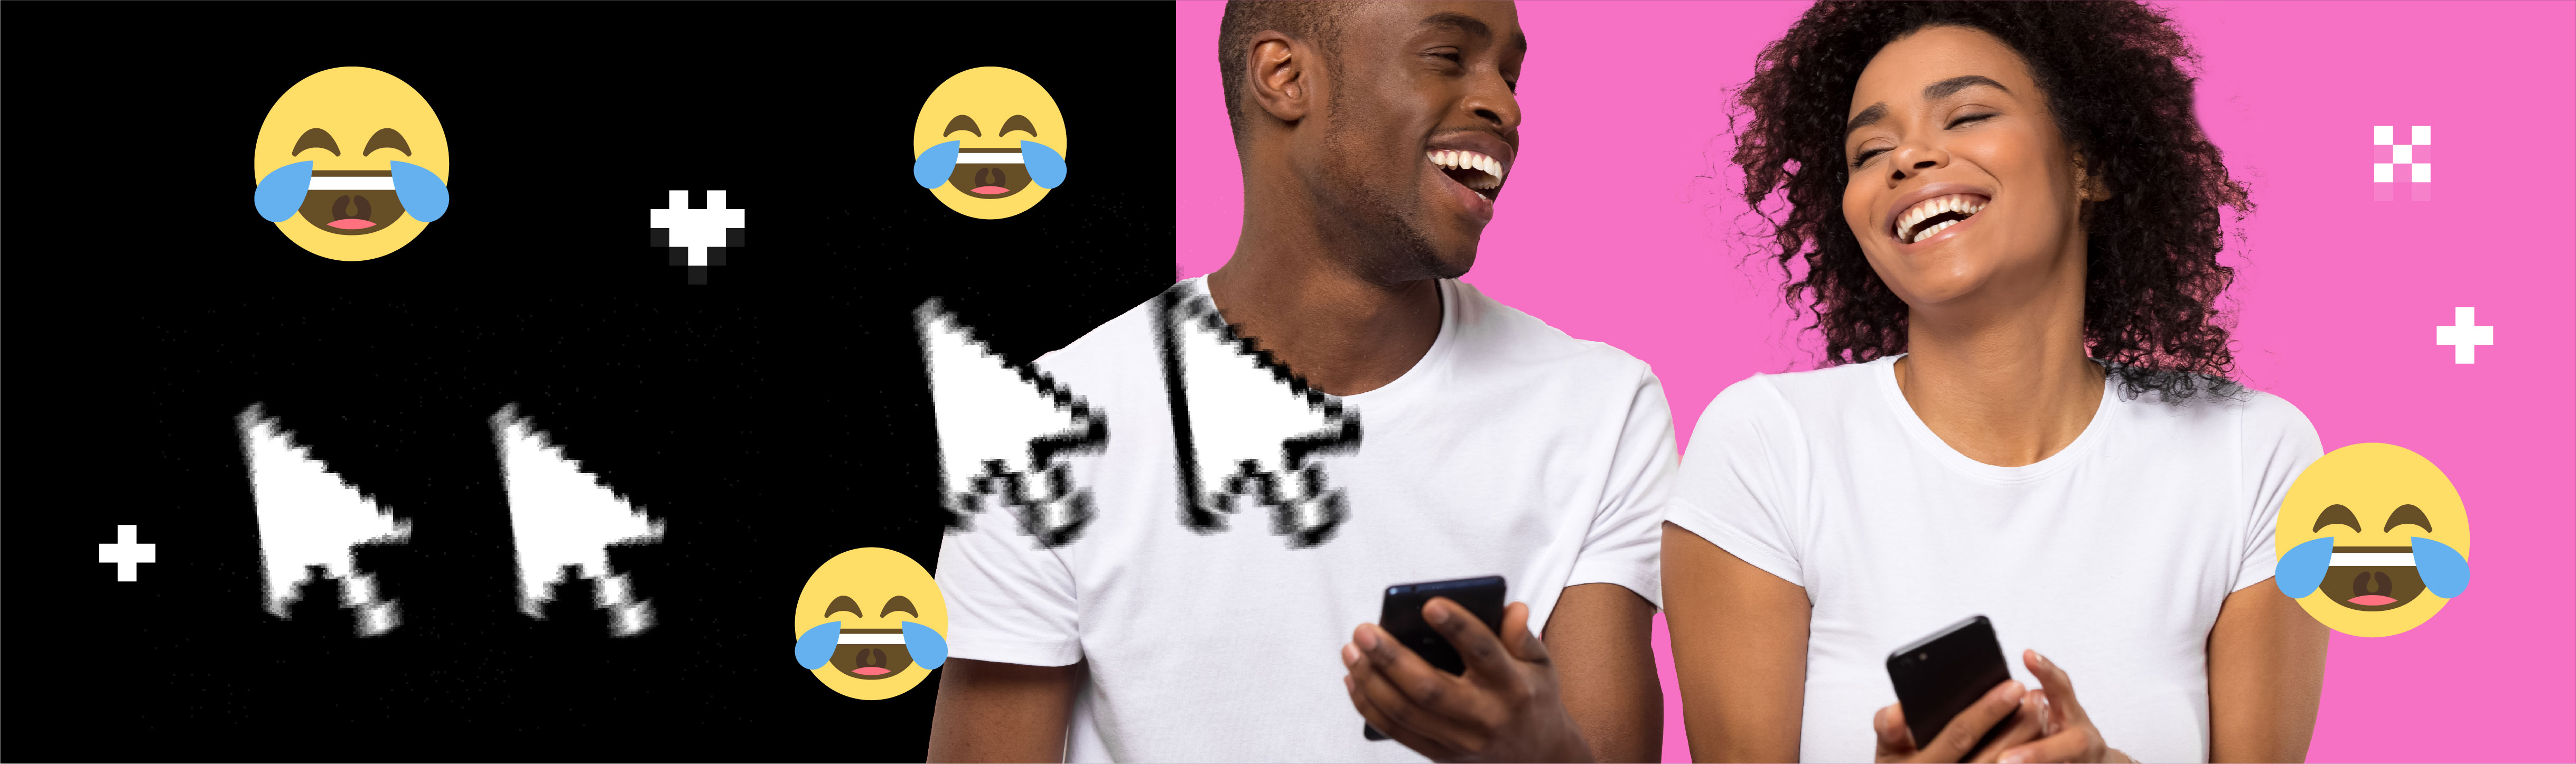 "deux personnes tenant des téléphones et riants, avec des emojis de visages riantes et des curseurs en forme de flèche"